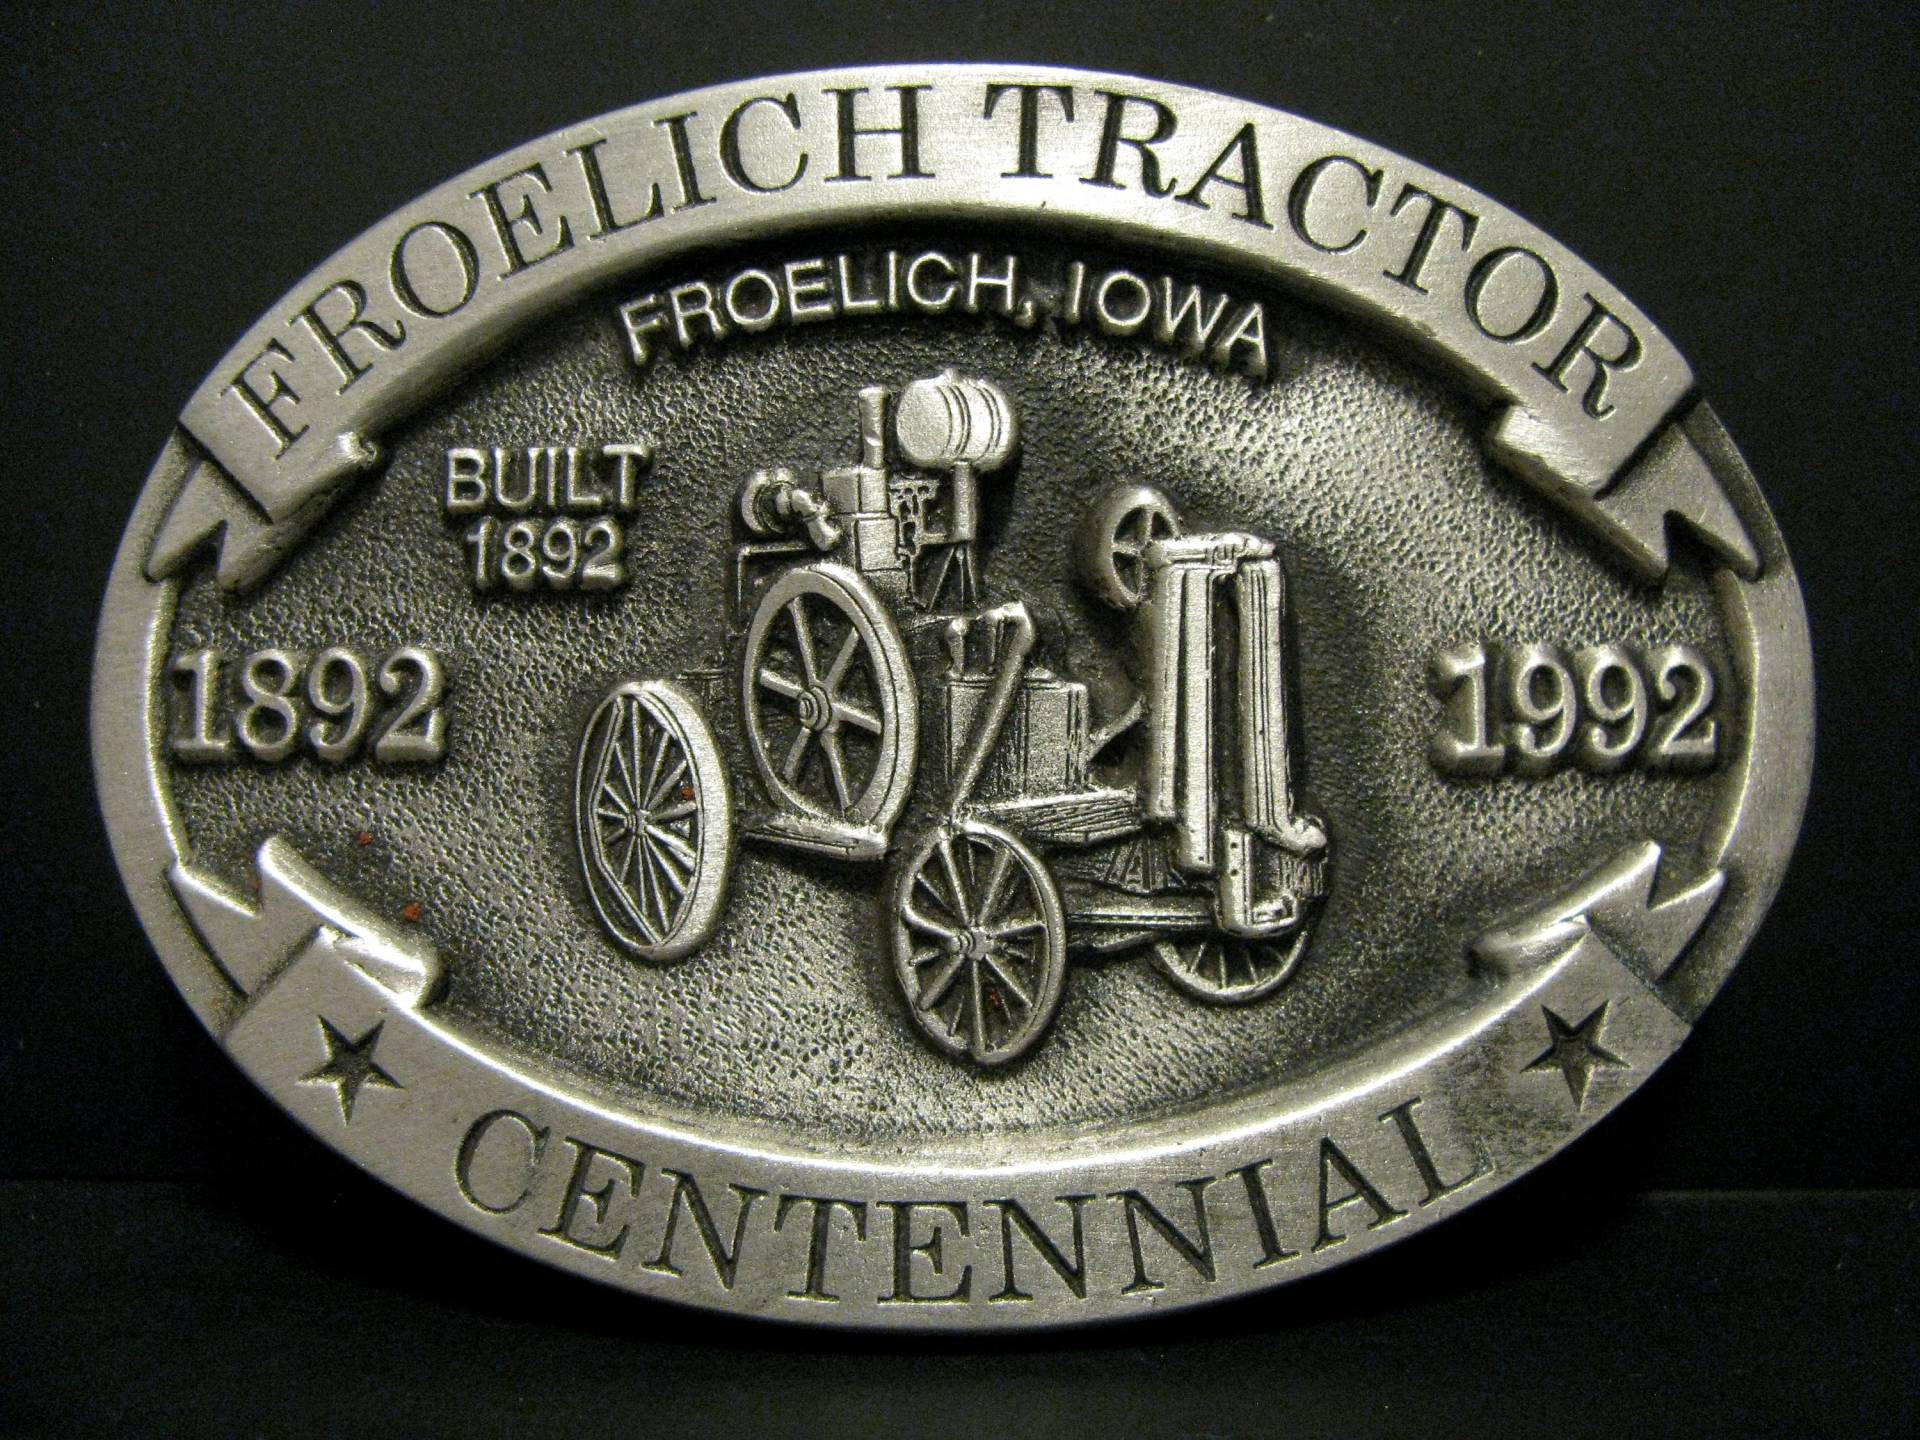 John Deere Froelich Traktor 100 Jahre Centennial 1892 - 1992 Zinn Gürtelschnalle Hergestellt Von Spec Cast Limited Edition Serial No. 496 Jd von BeyerTractor